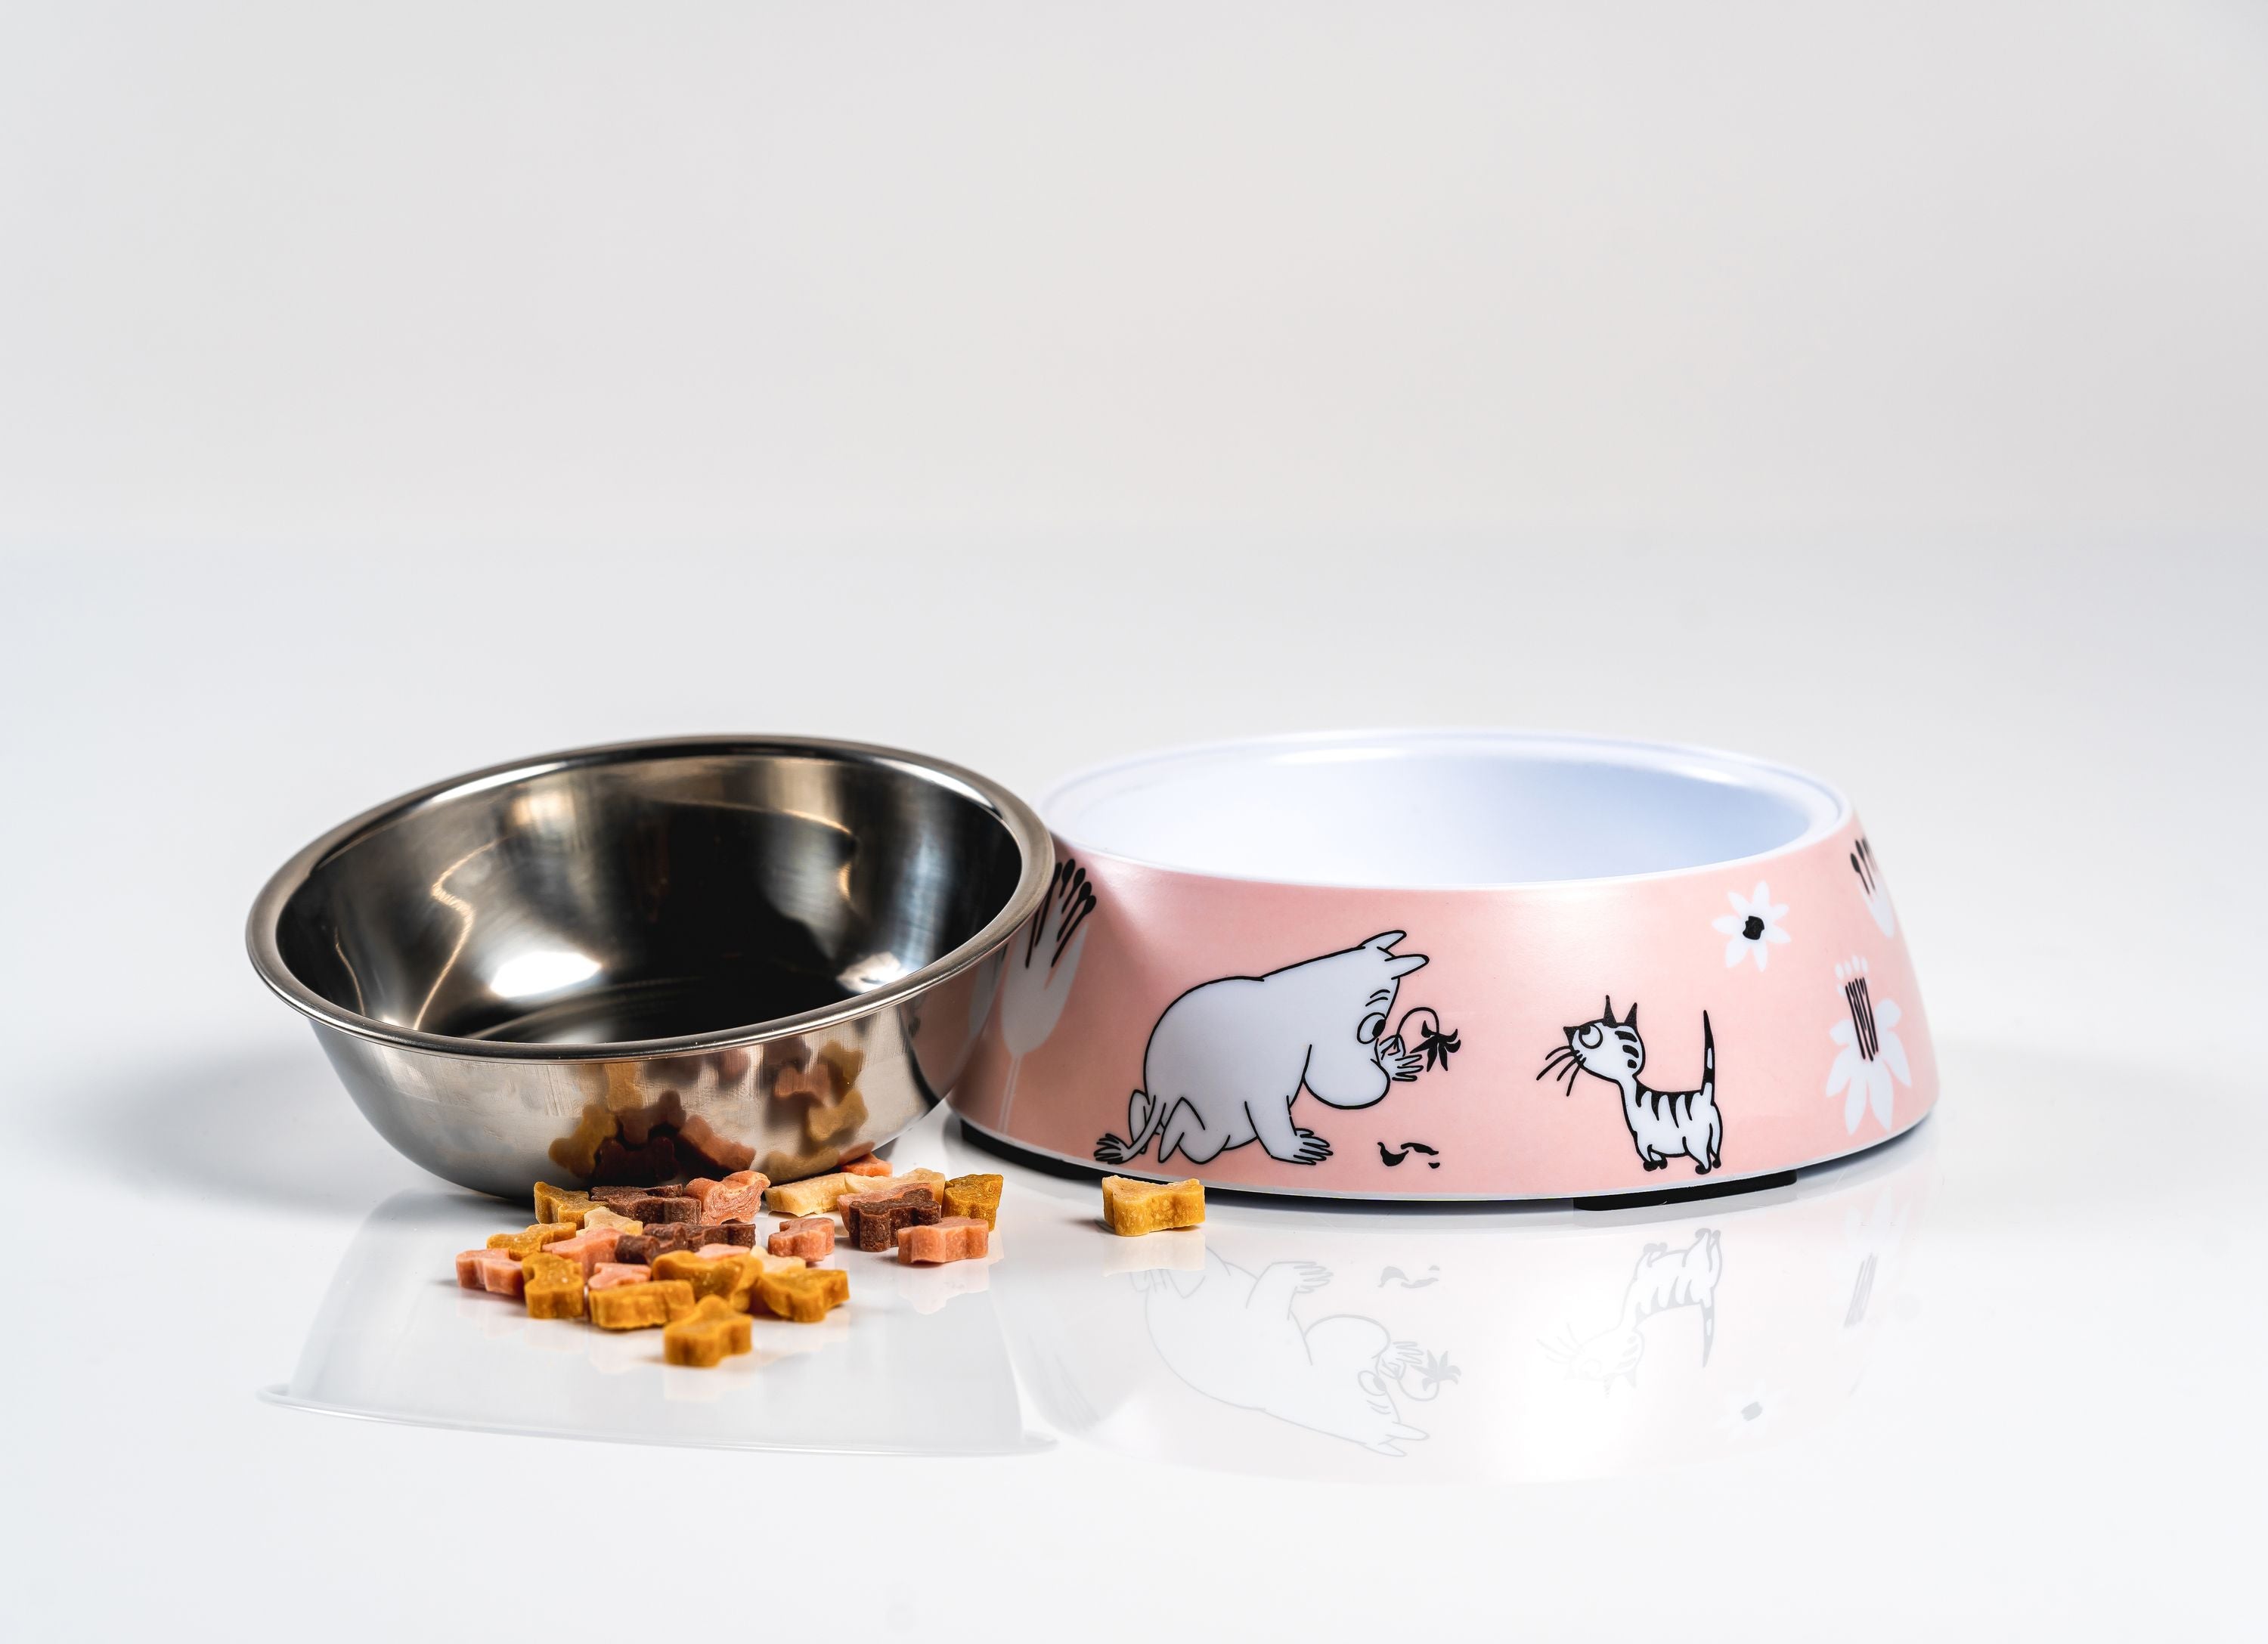 Muurla Moomin Haustiere Food Bowl S, Pink